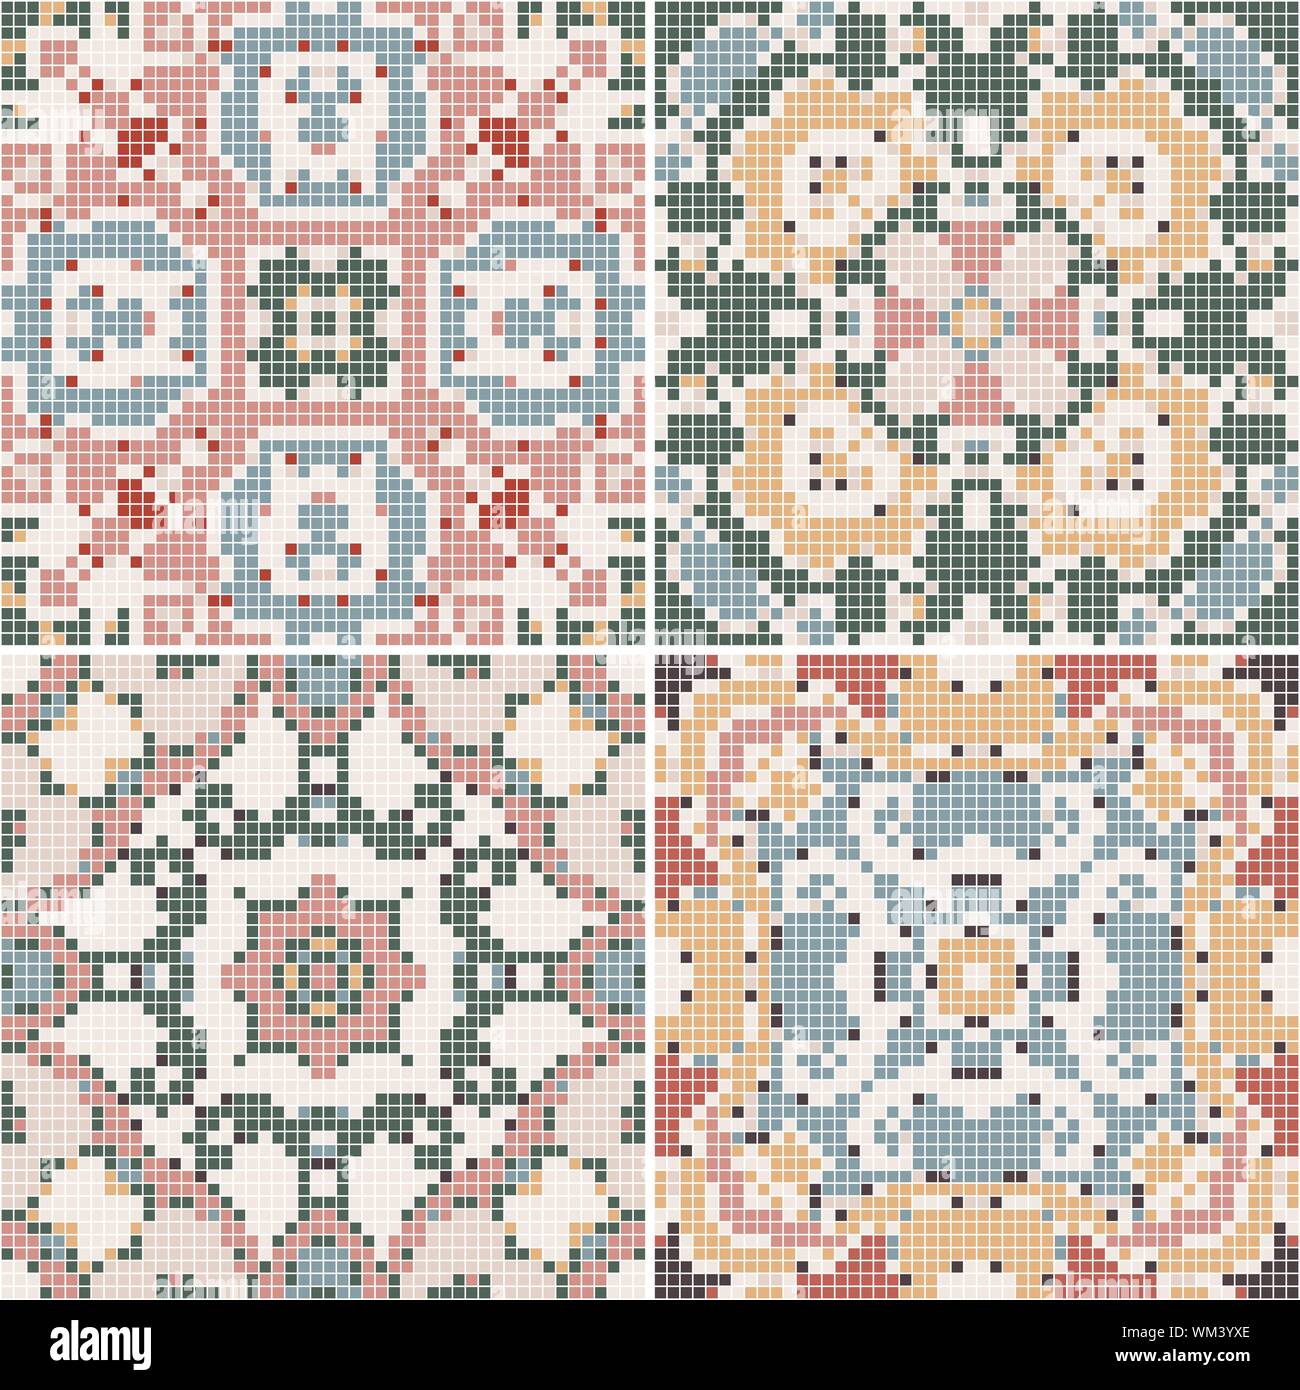 Eine Sammlung von Keramikfliesen in retro Farben. Eine Reihe von quadratischen Muster im ethnischen Stil. Vector Illustration. Stock Vektor